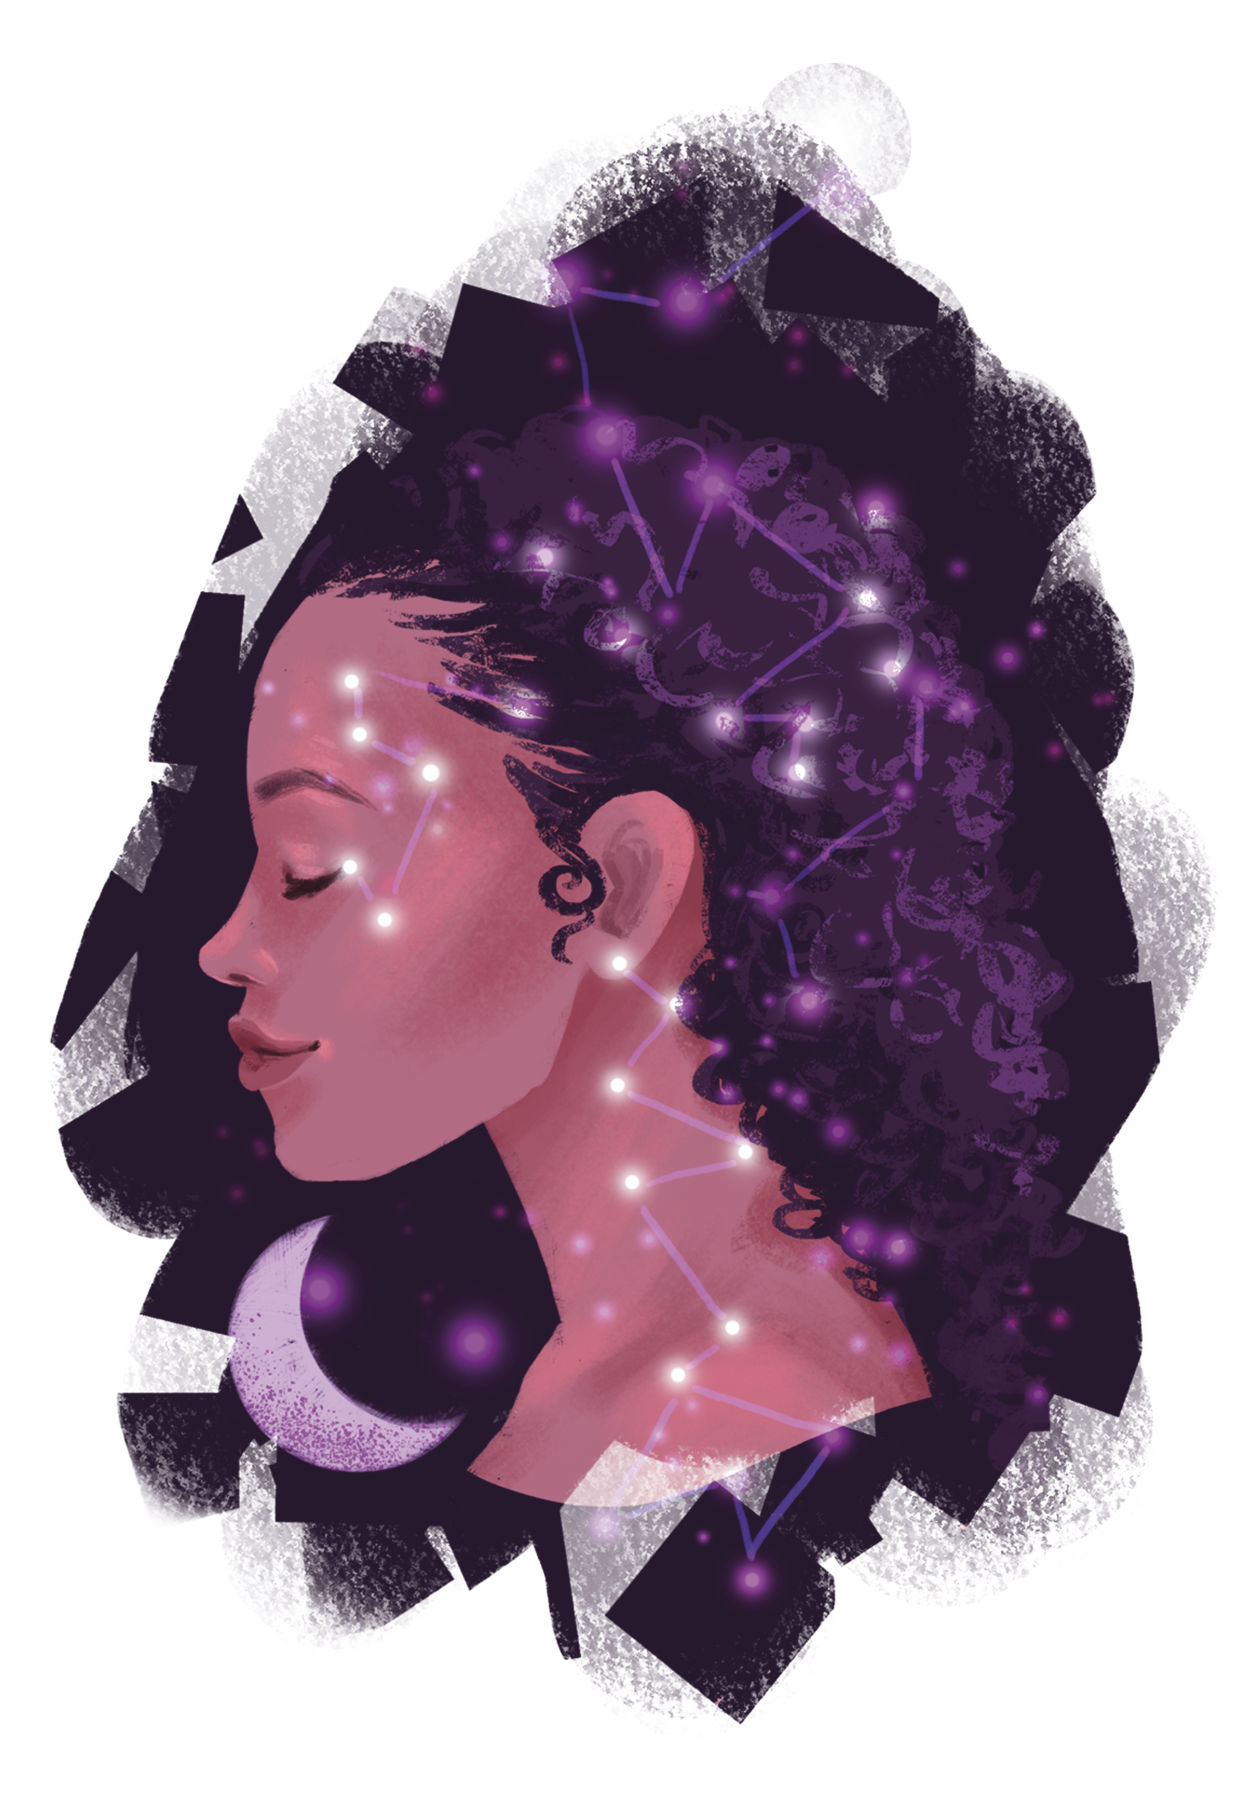 Ilustração. Retato de uma mulher de cabelos pretos cacheados. Ela está de perfil, de olhos fechados e expressão serena. Sobrepostos a sua figura há pontos e traços iluminados que simbolizam estrelas. Eles se conectam formando constelações. Próxima ao rosto dela, uma lua crescente.